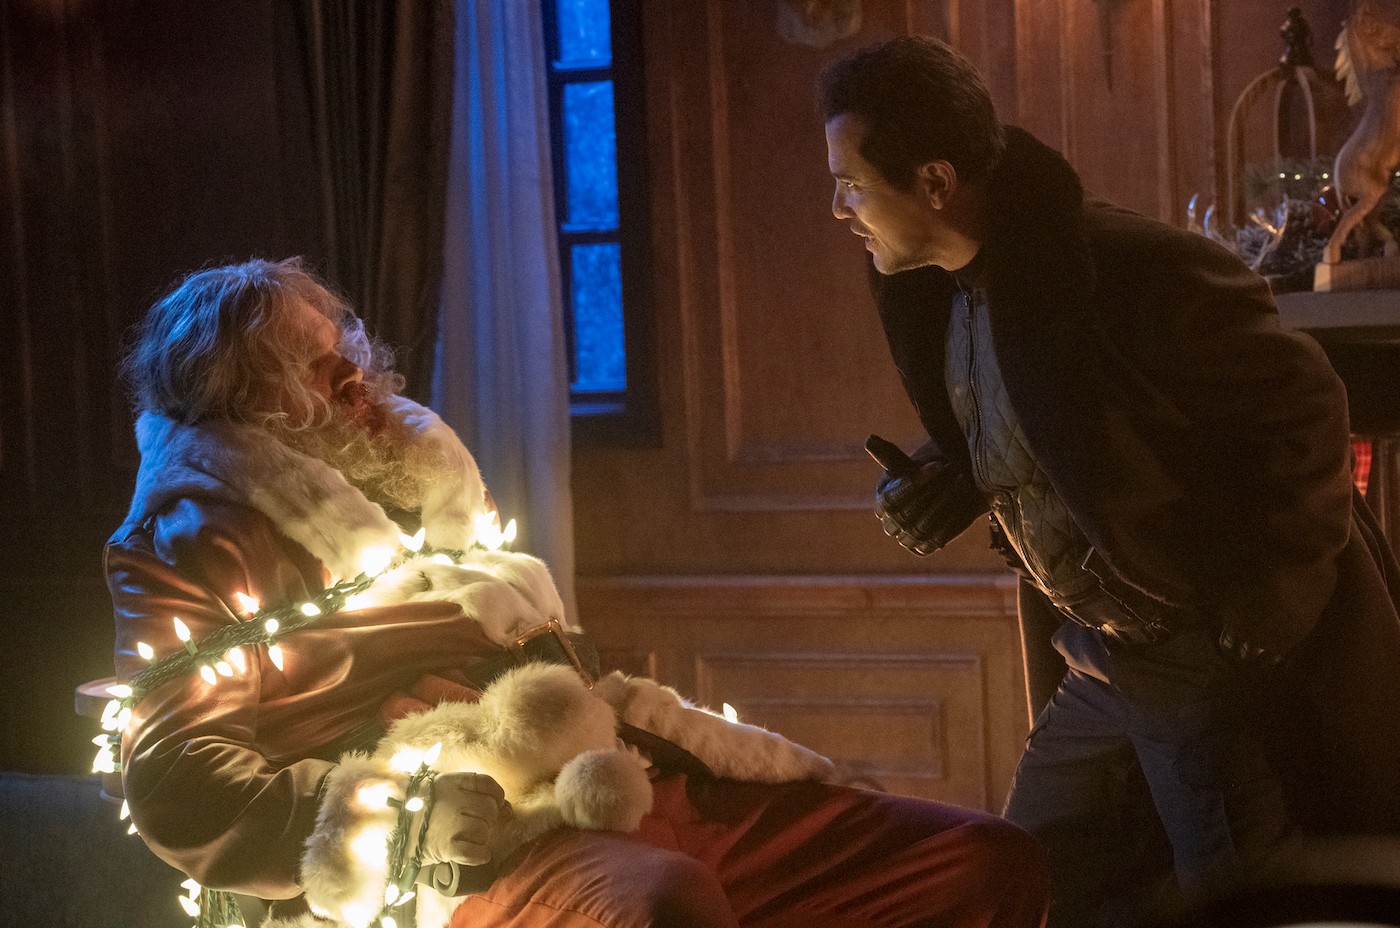 David Harbous disfrazado de Papá Noel y atado con luces navideñas, mientras John Leguizamo le grita.